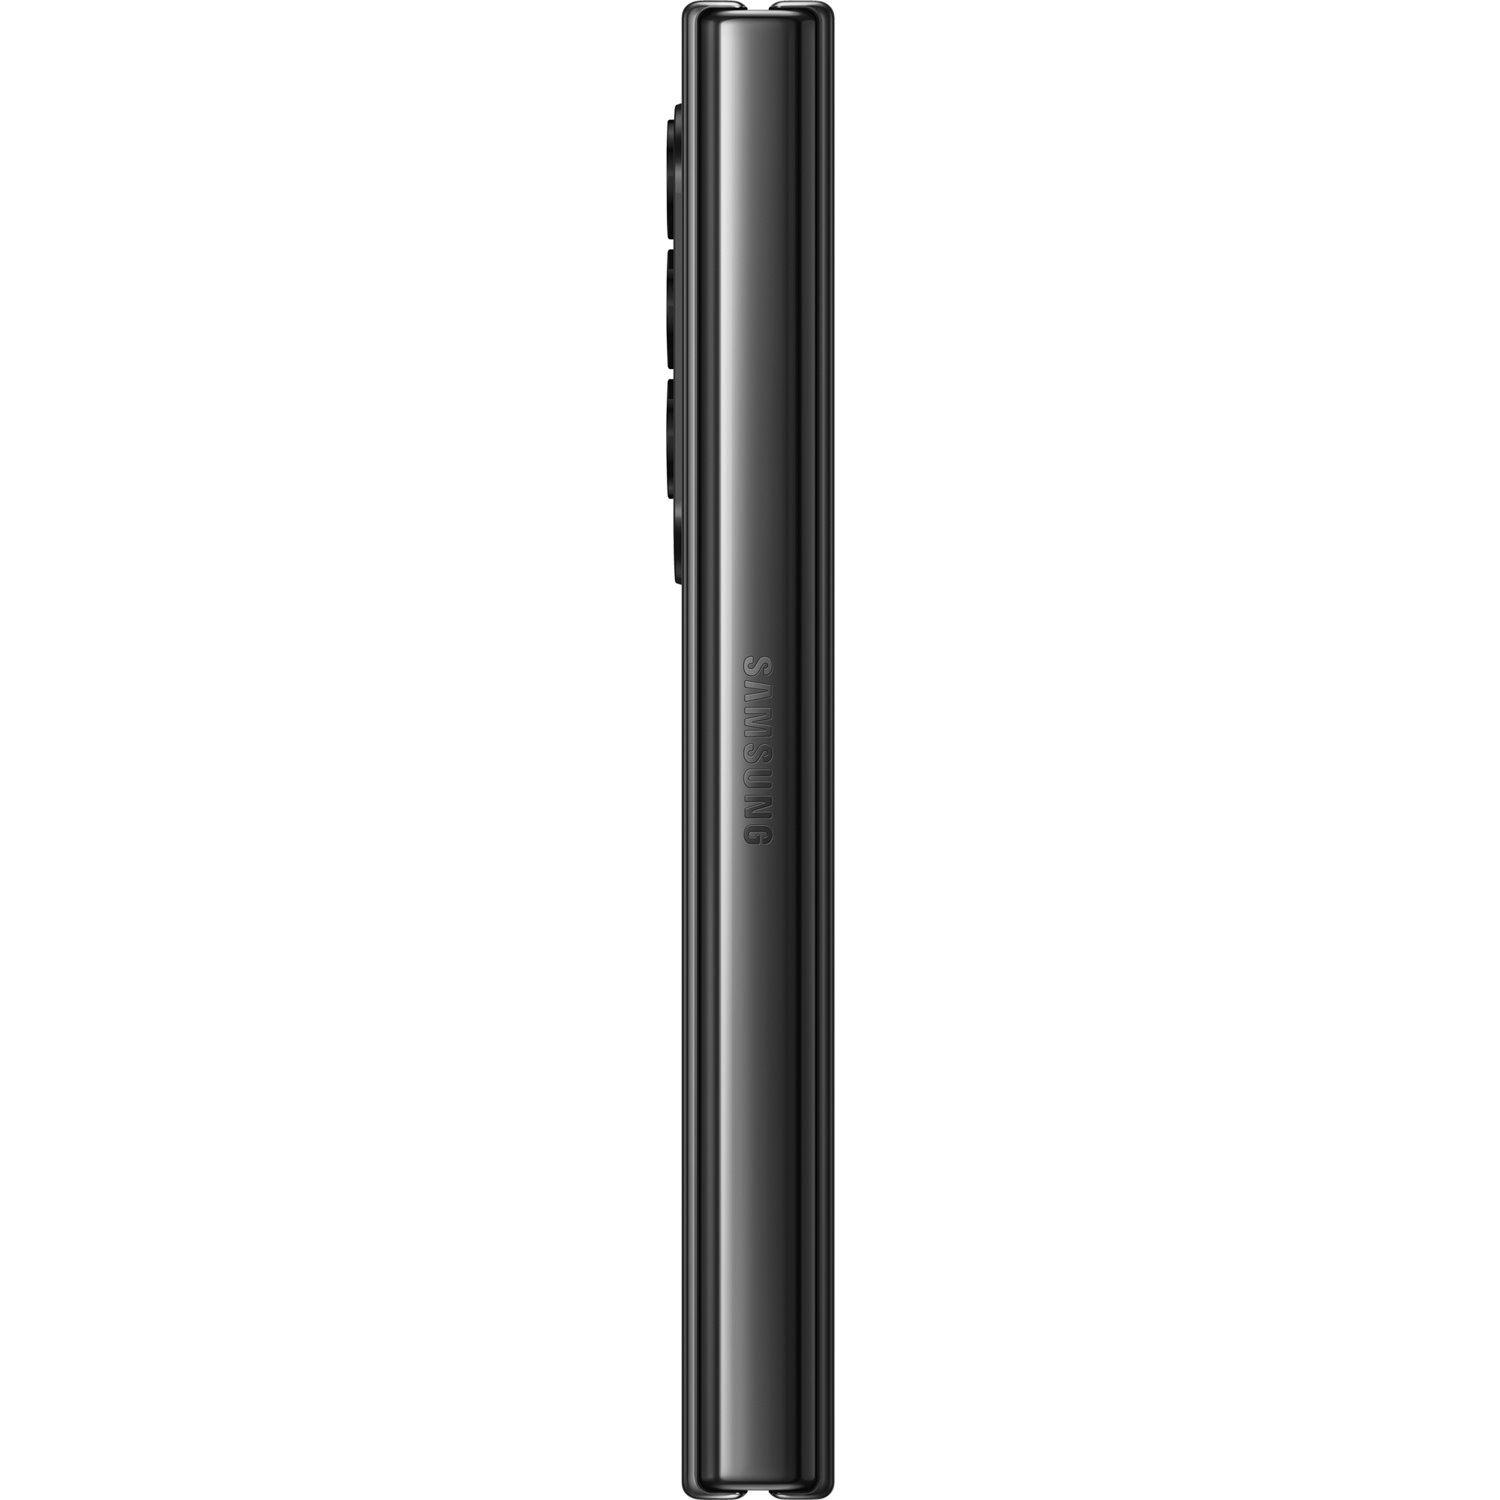 Samsung Galaxy Z Fold4 512 GB Smartphone - 7.6" Flexible Folding Screen Dynamic AMOLED 2176 x 1812 - Octa-core (Cortex X2Single-core (1 Core) 3.19 GHz + Cortex A710 Triple-core (3 Core) 2.75 GHz + Cortex A510 Quad-core (4 Core) 1.80 GHz) - 12 GB RAM - Android 12 - 5G - Phantom Black